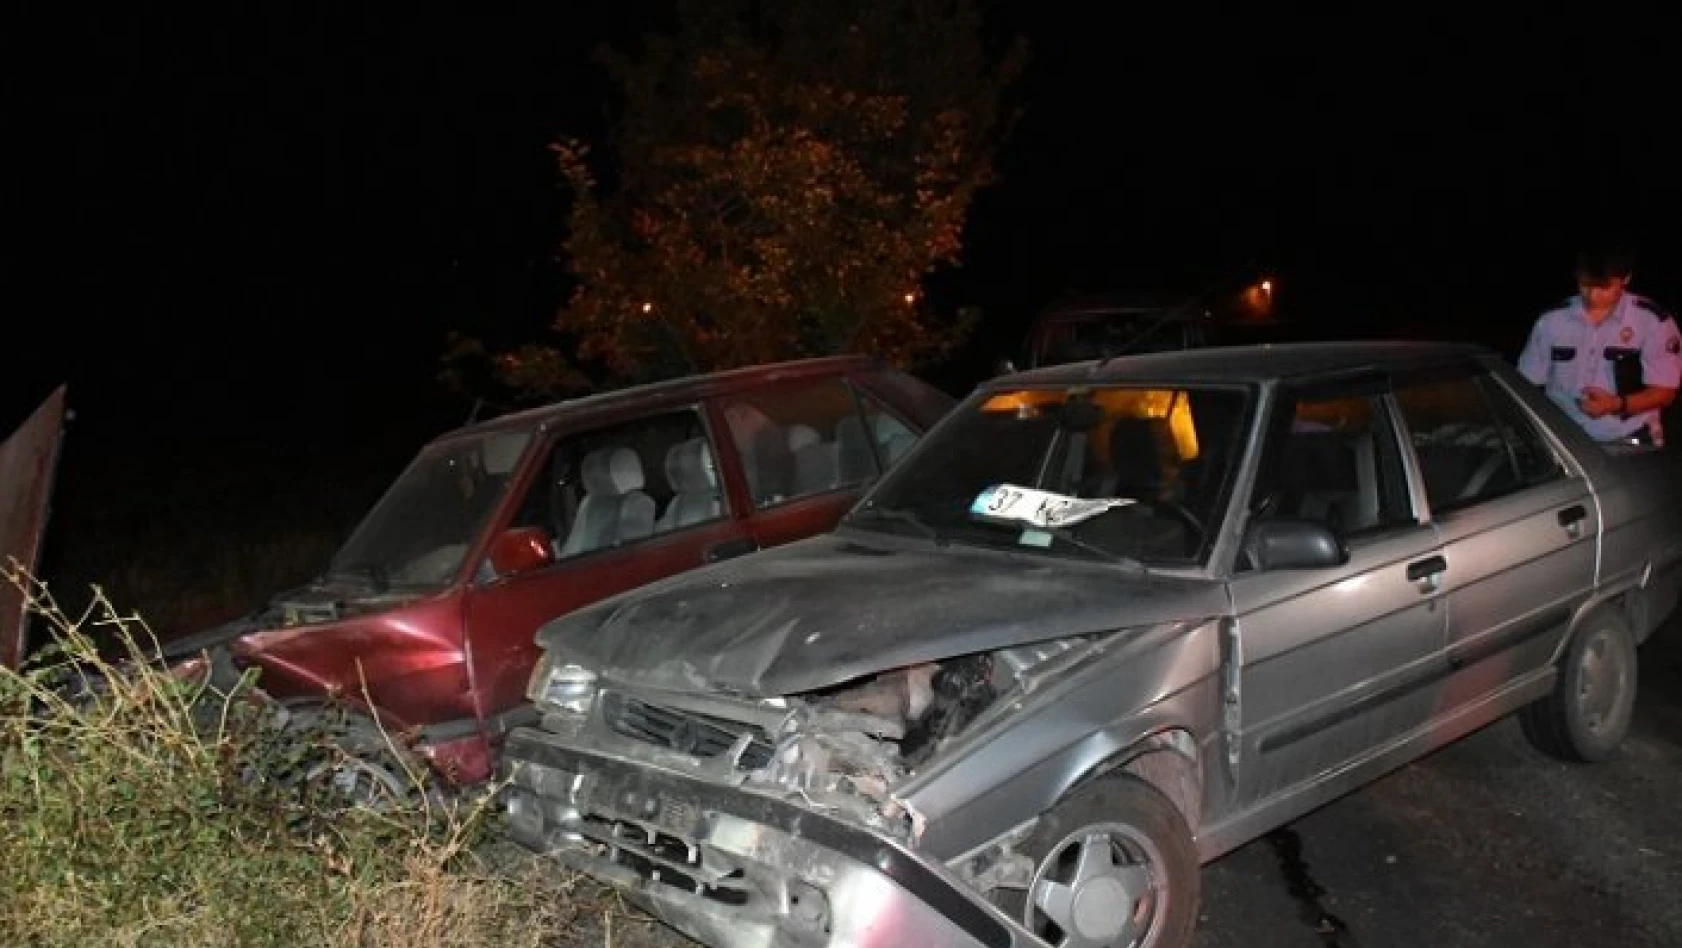 Tosya'da meydana gelen trafik kazasında 1 kişi yaralandı